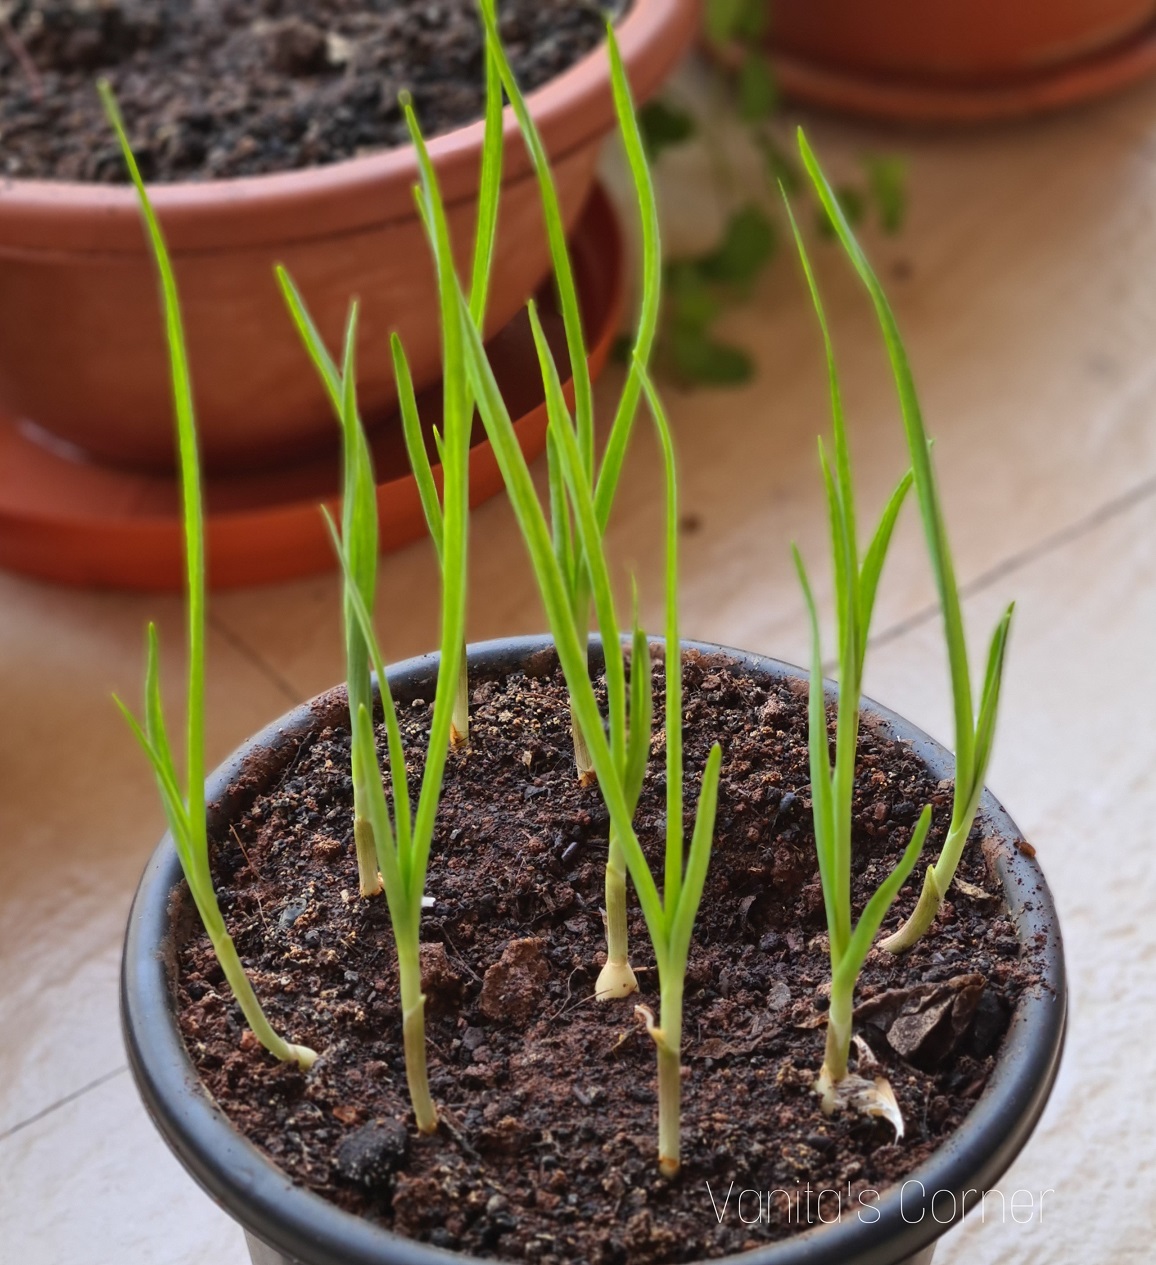 Growing green garlic at home - Vanita's Corner